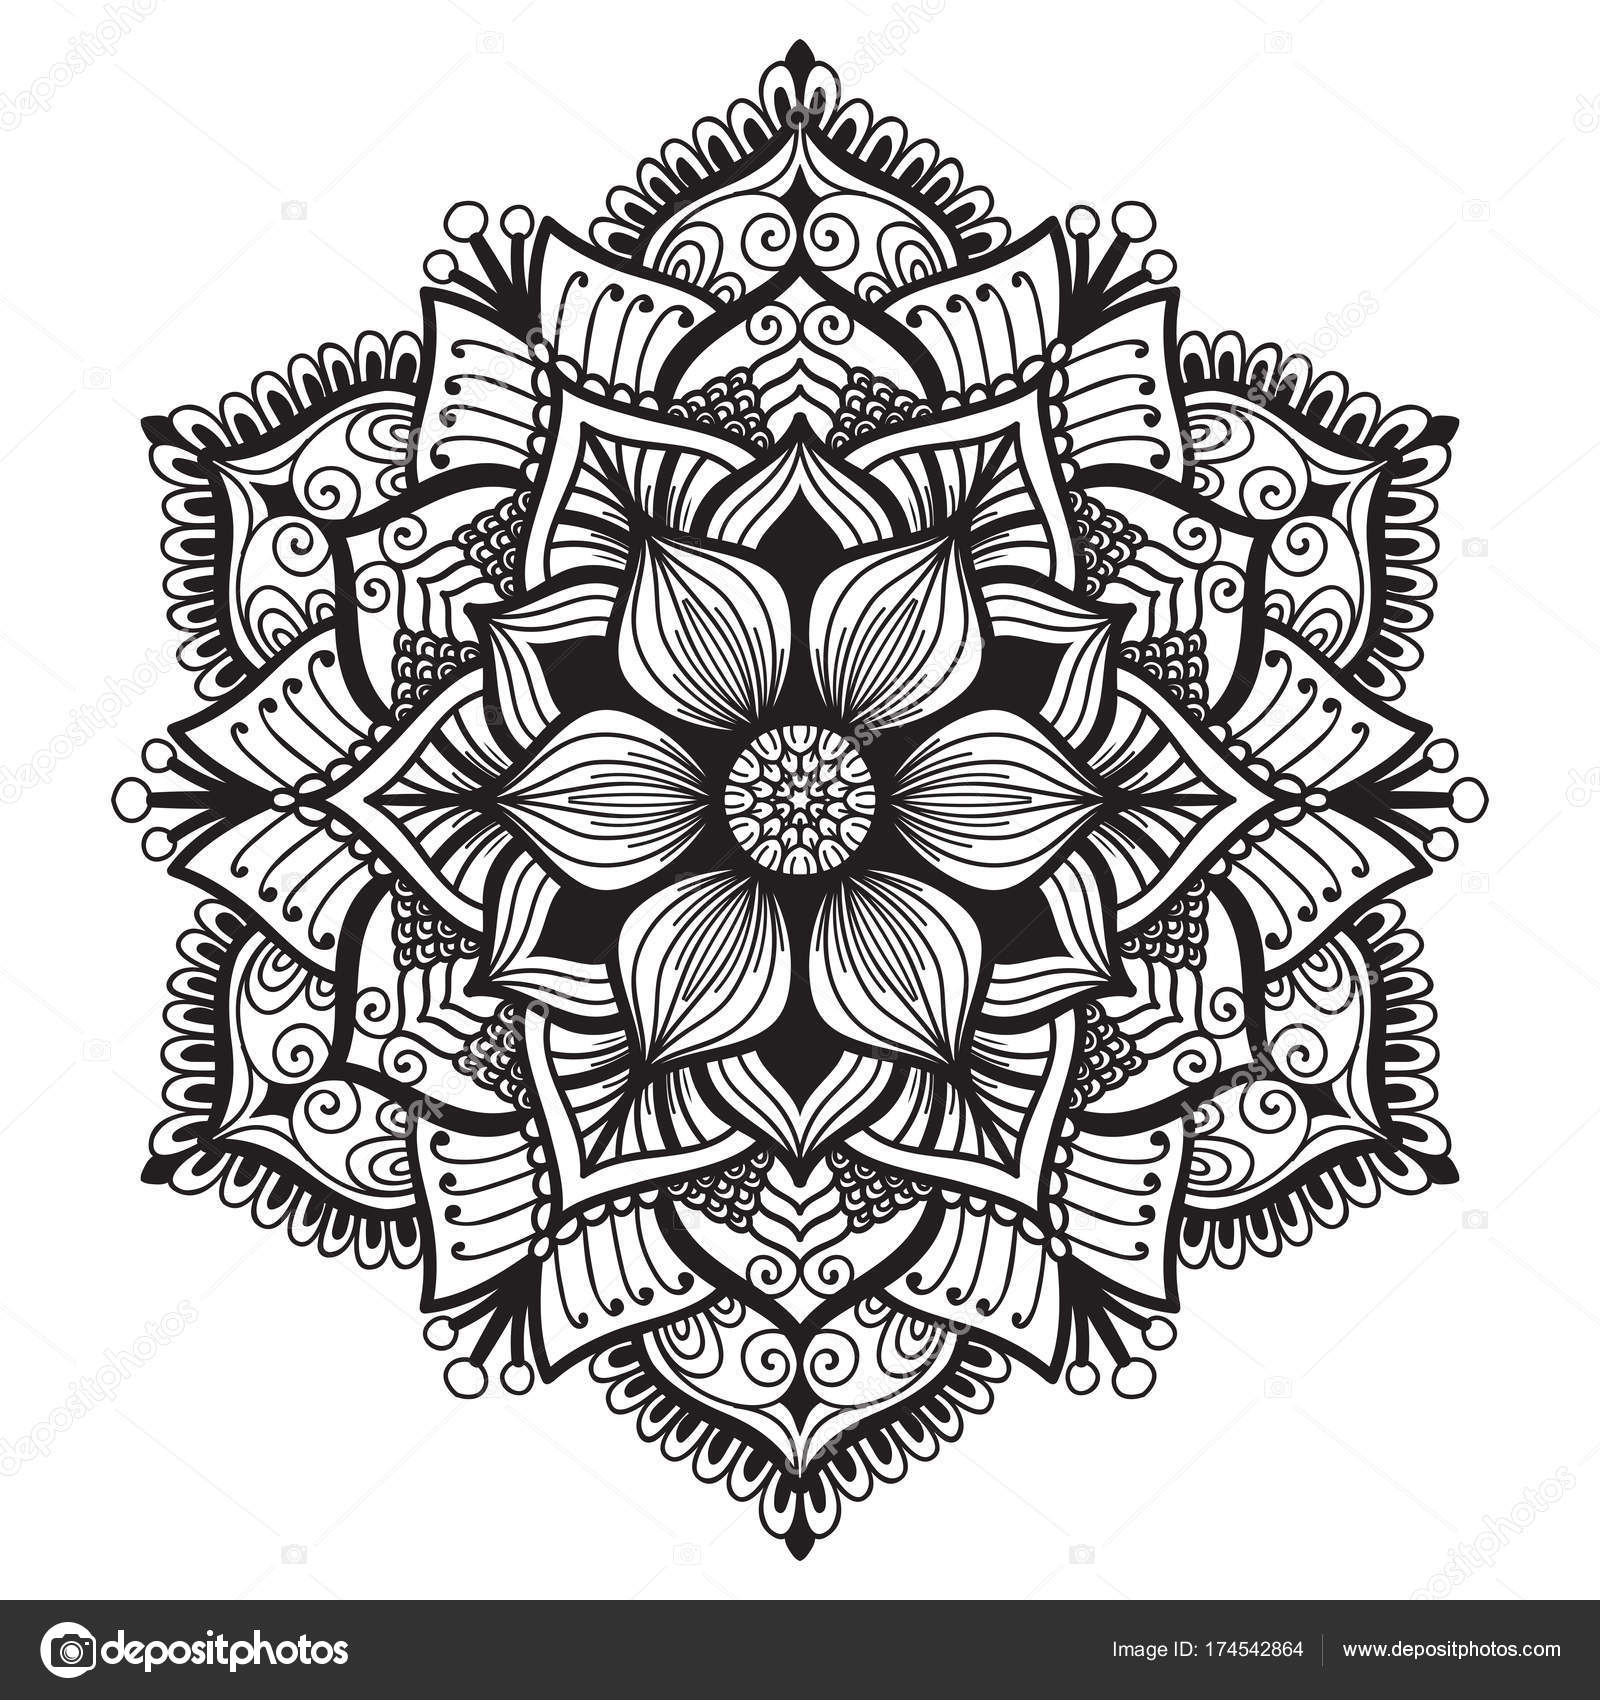 Download Hand drawn mandala ⬇ Vector Image by © katerinamk | Vector Stock 174542864